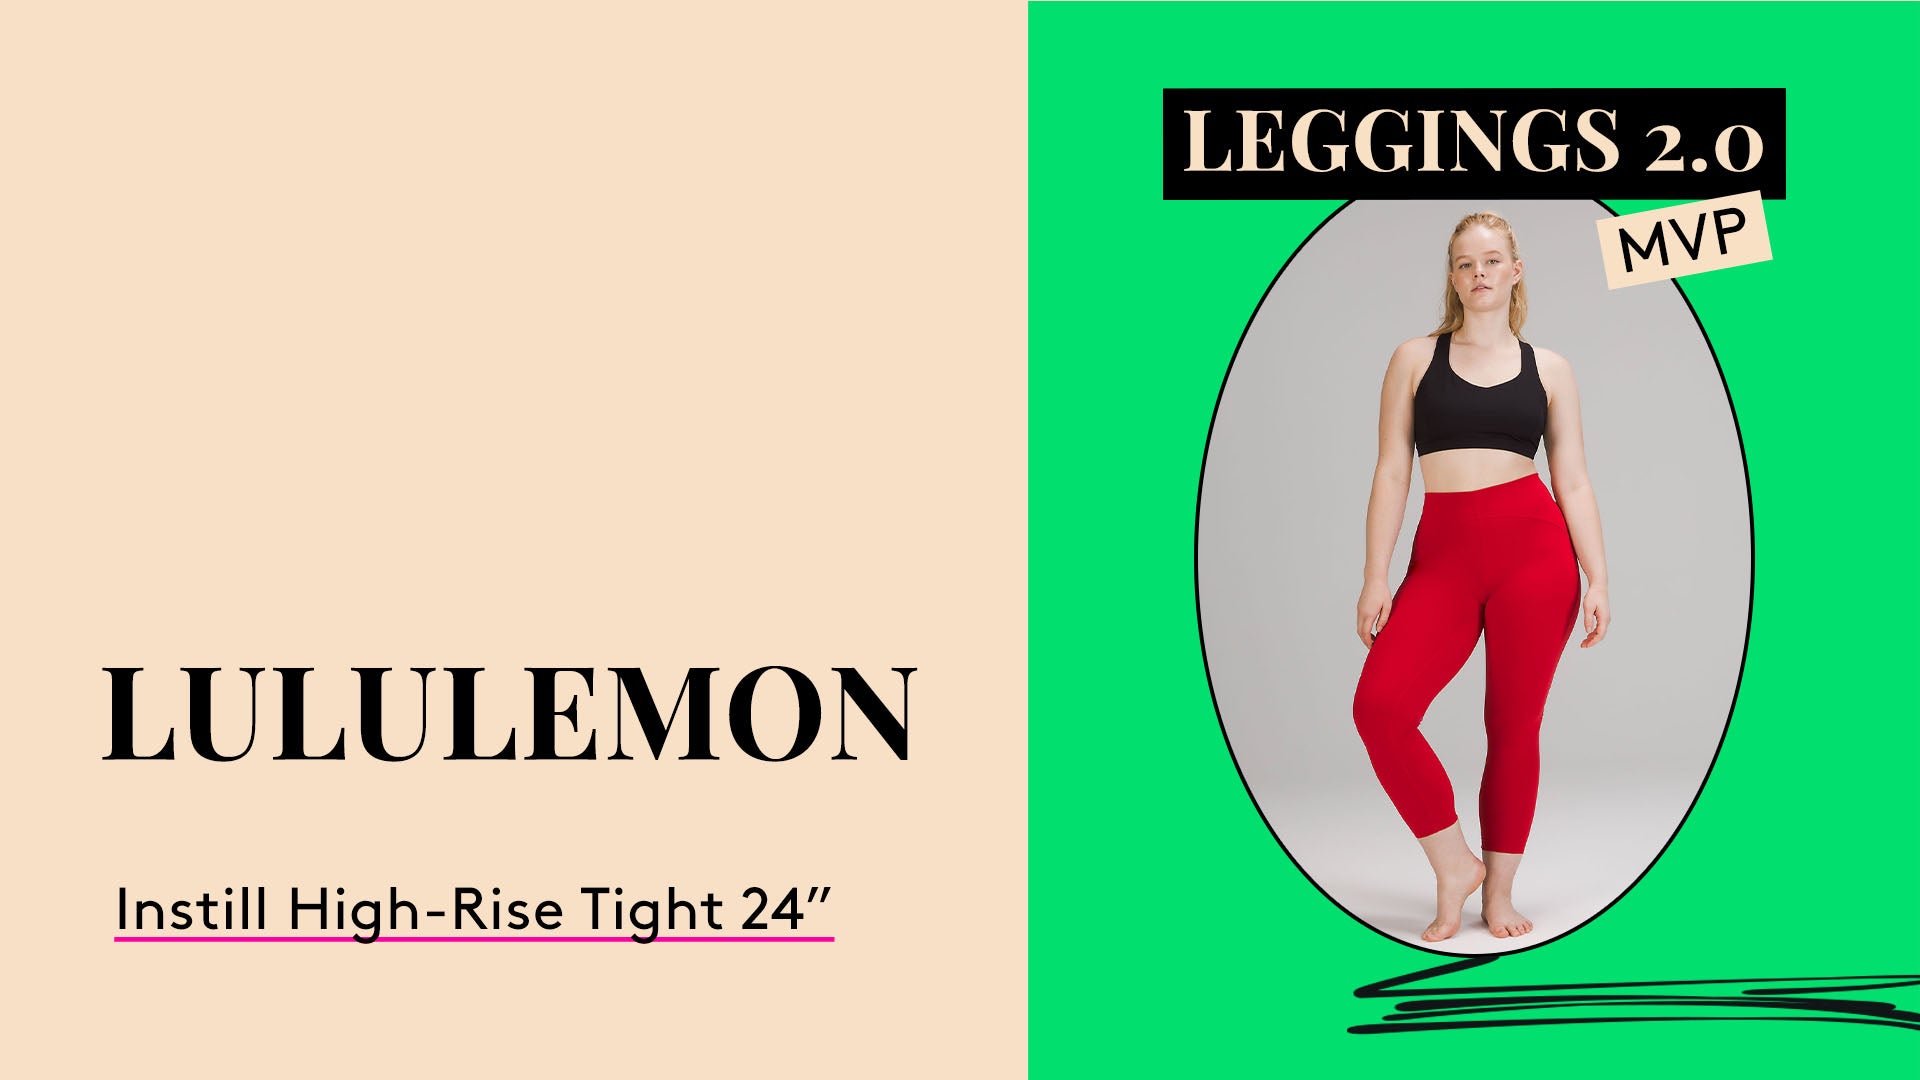 Leggings 2.0 MVP. Lululemon Instill High-Rise Tight 24"